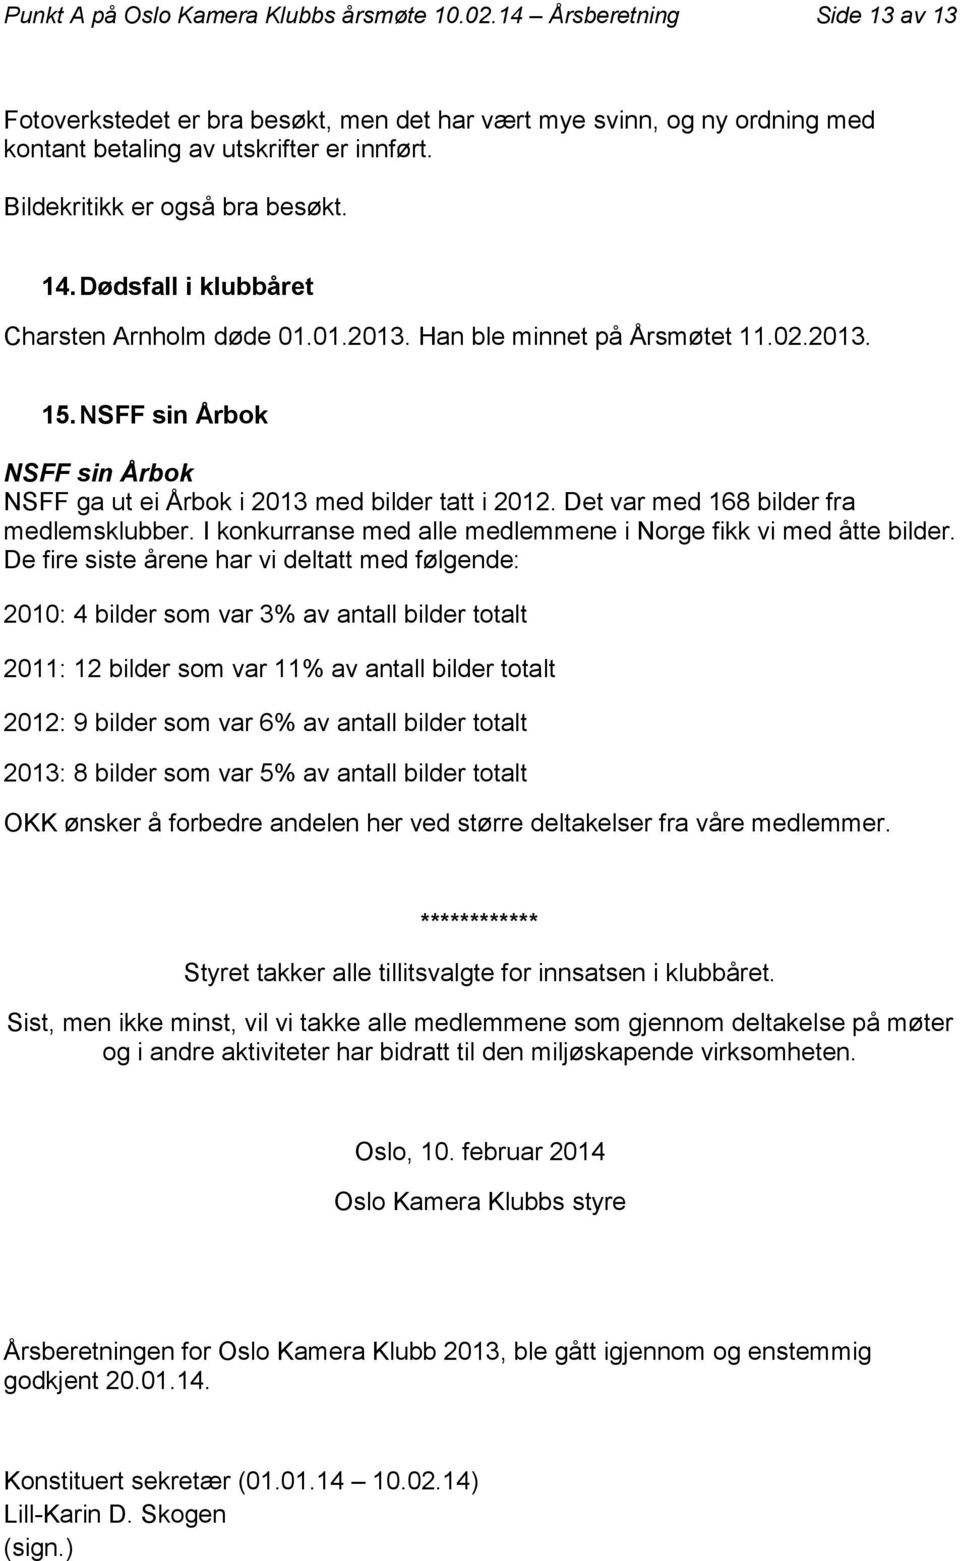 NSFF sin Årbok NSFF sin Årbok NSFF ga ut ei Årbok i 2013 med bilder tatt i 2012. Det var med 168 bilder fra medlemsklubber. I konkurranse med alle medlemmene i Norge fikk vi med åtte bilder.